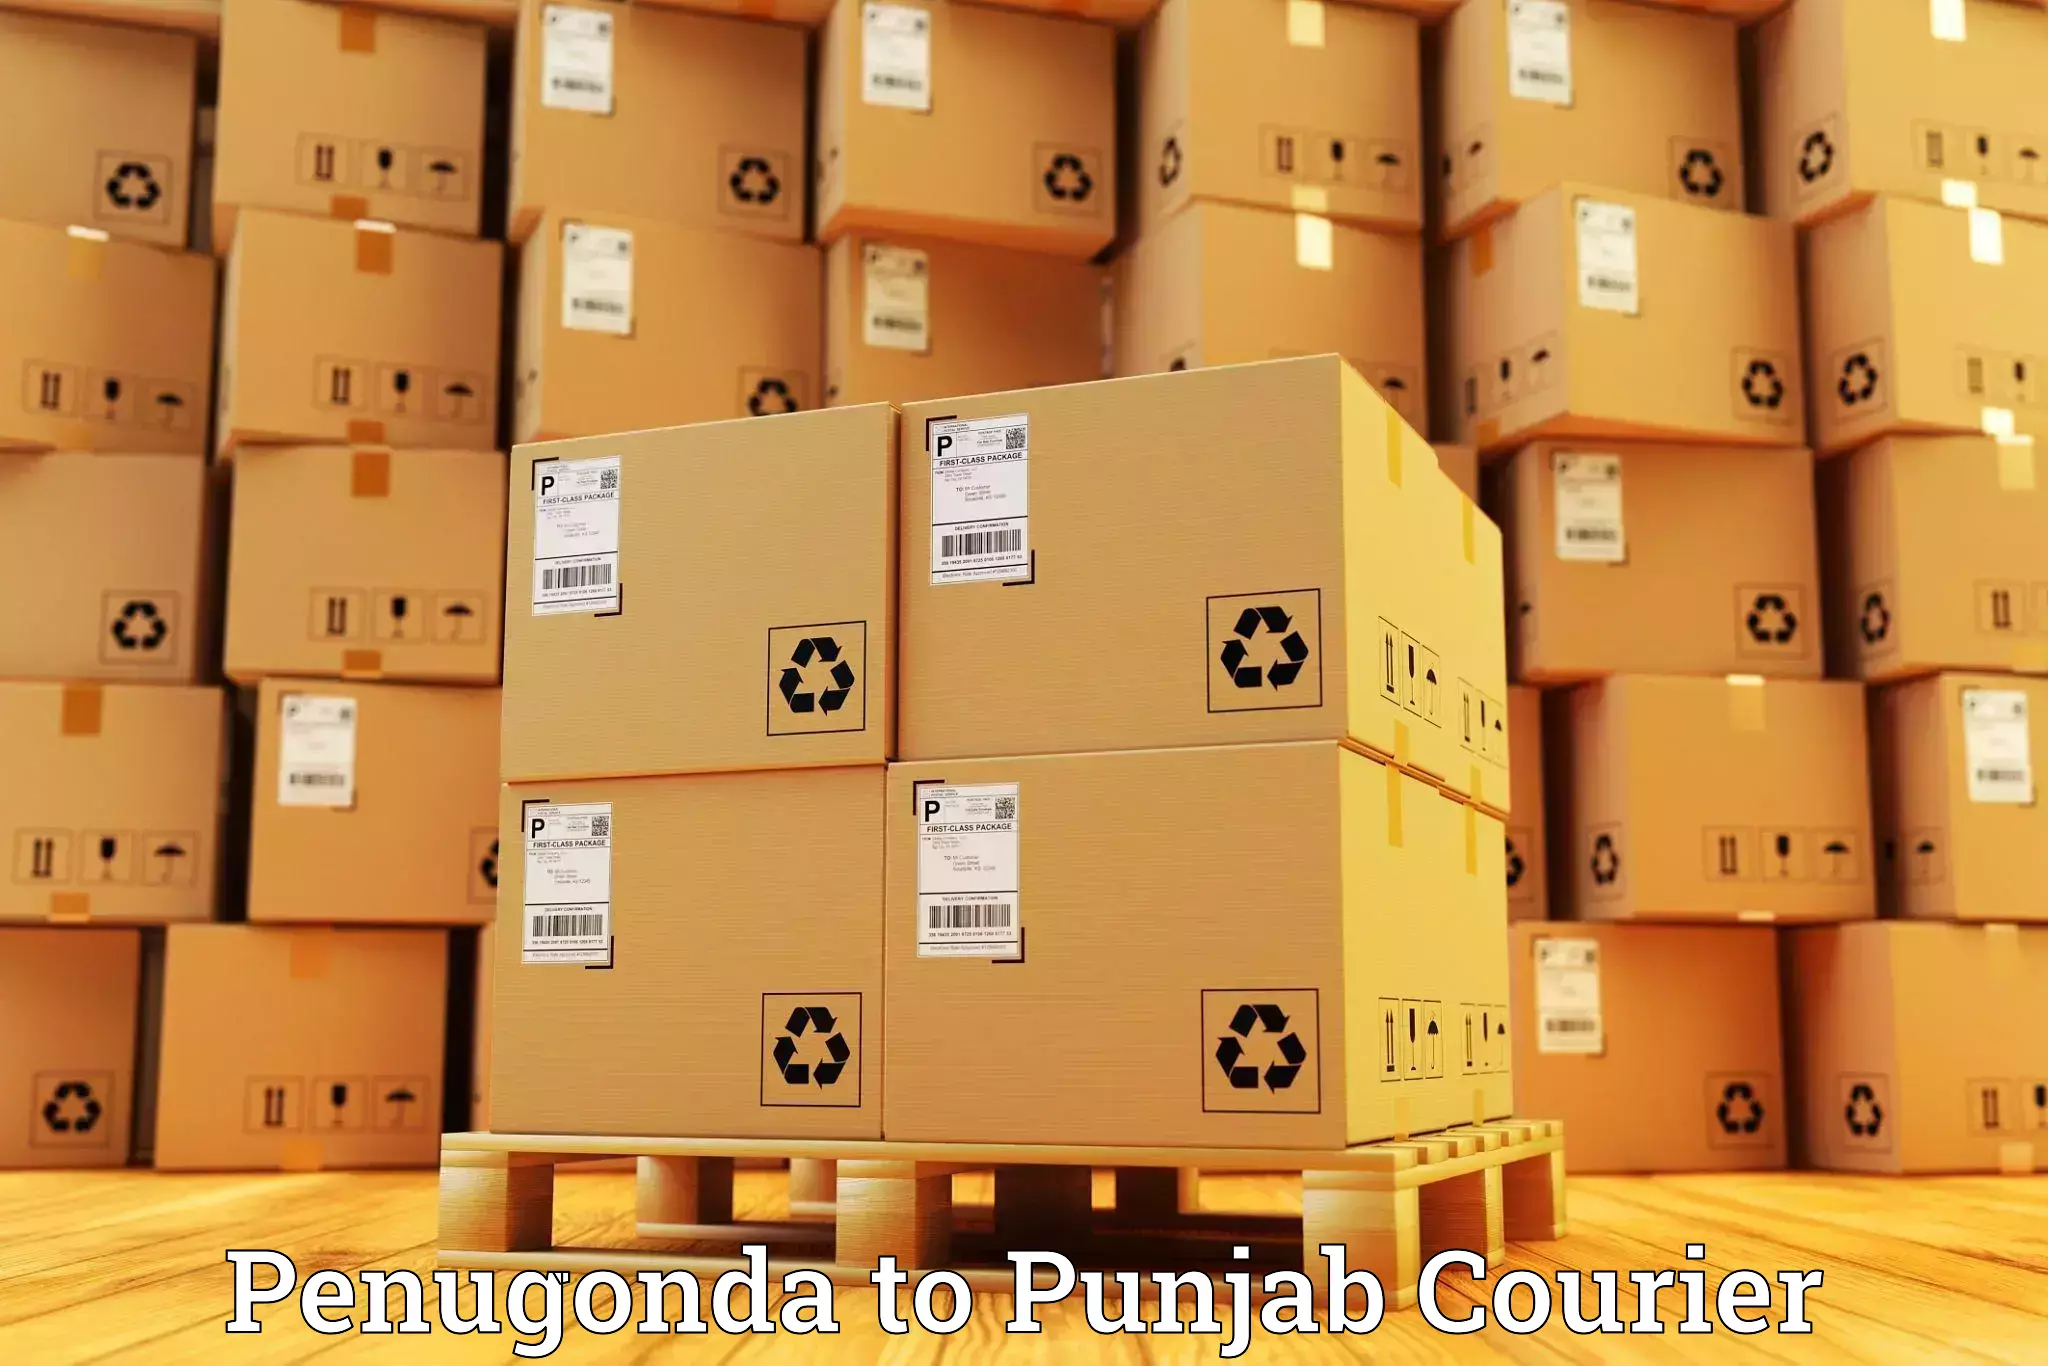 Bulk shipment Penugonda to Punjab